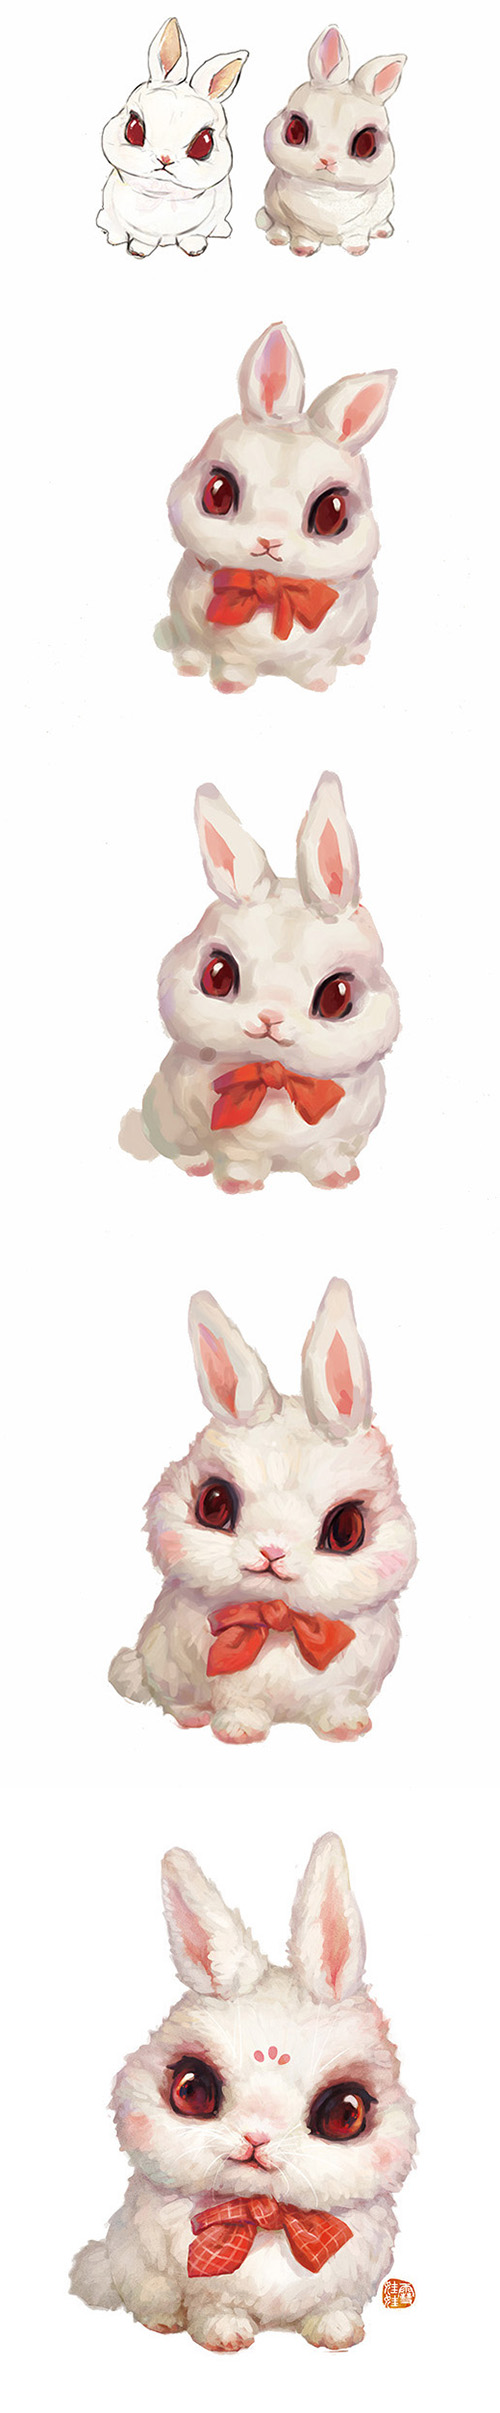 【兔兔】生肖兔.兔年.卯兔